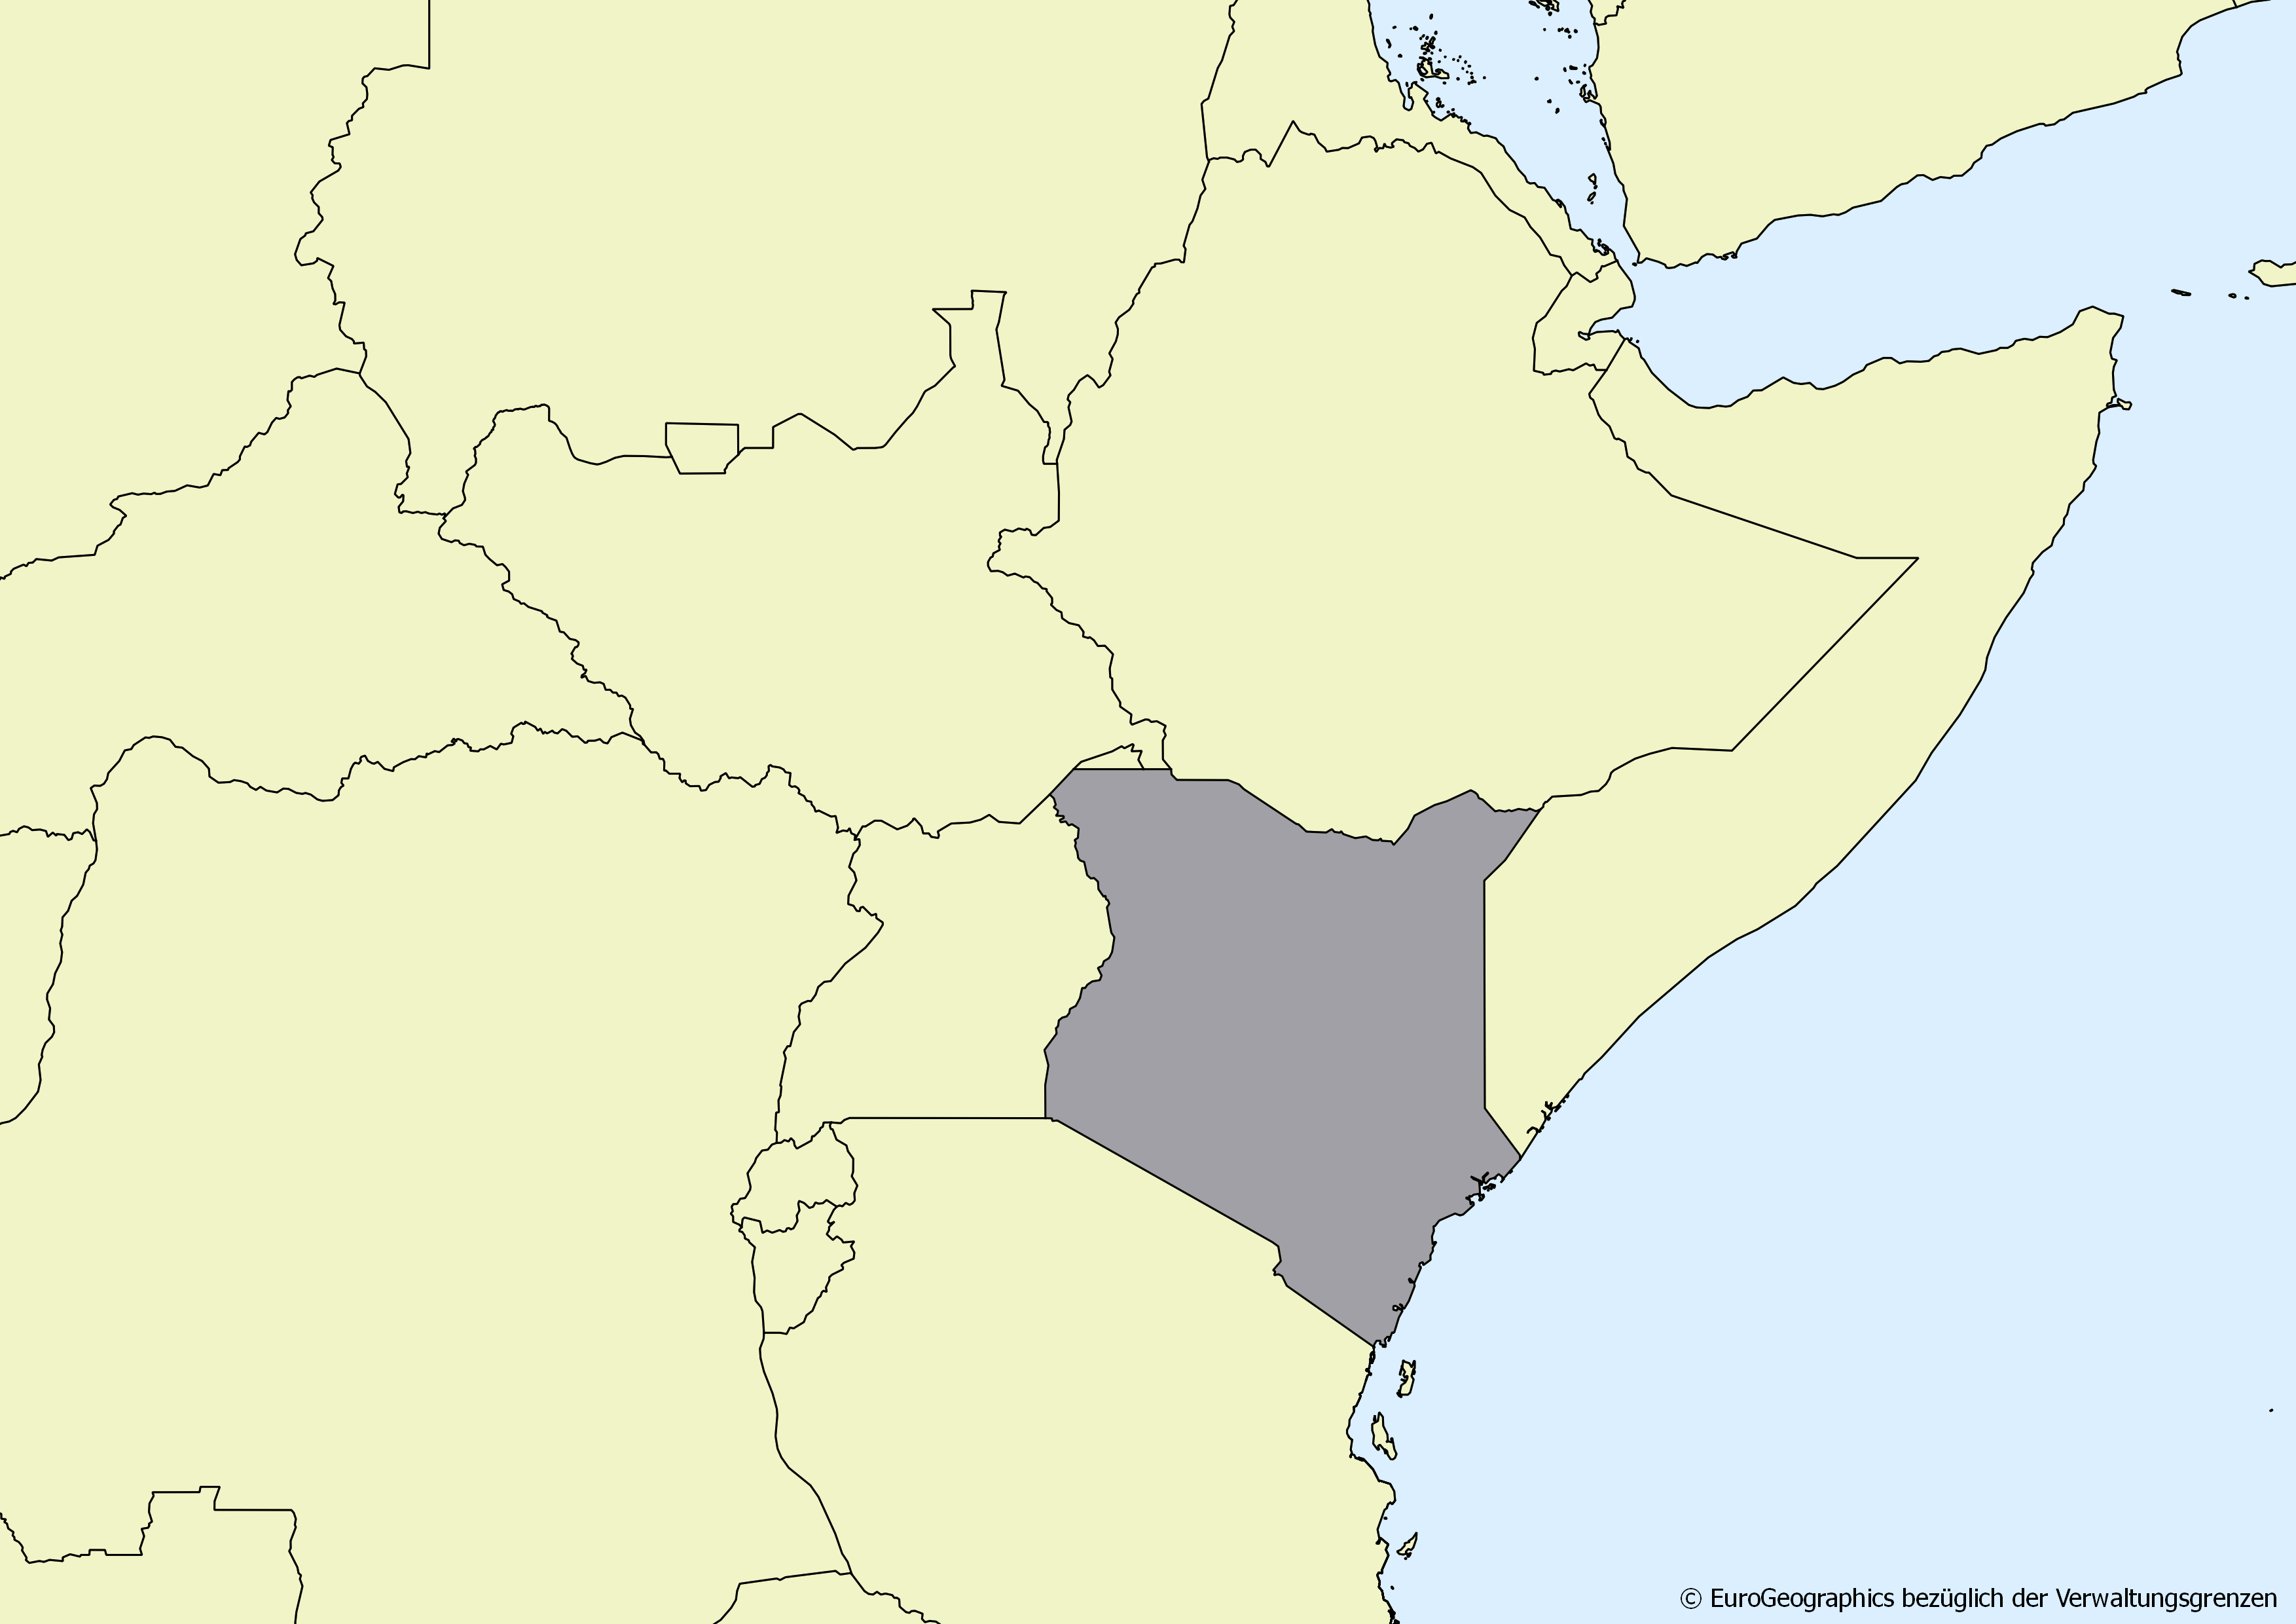 Landkarte Äthiopien